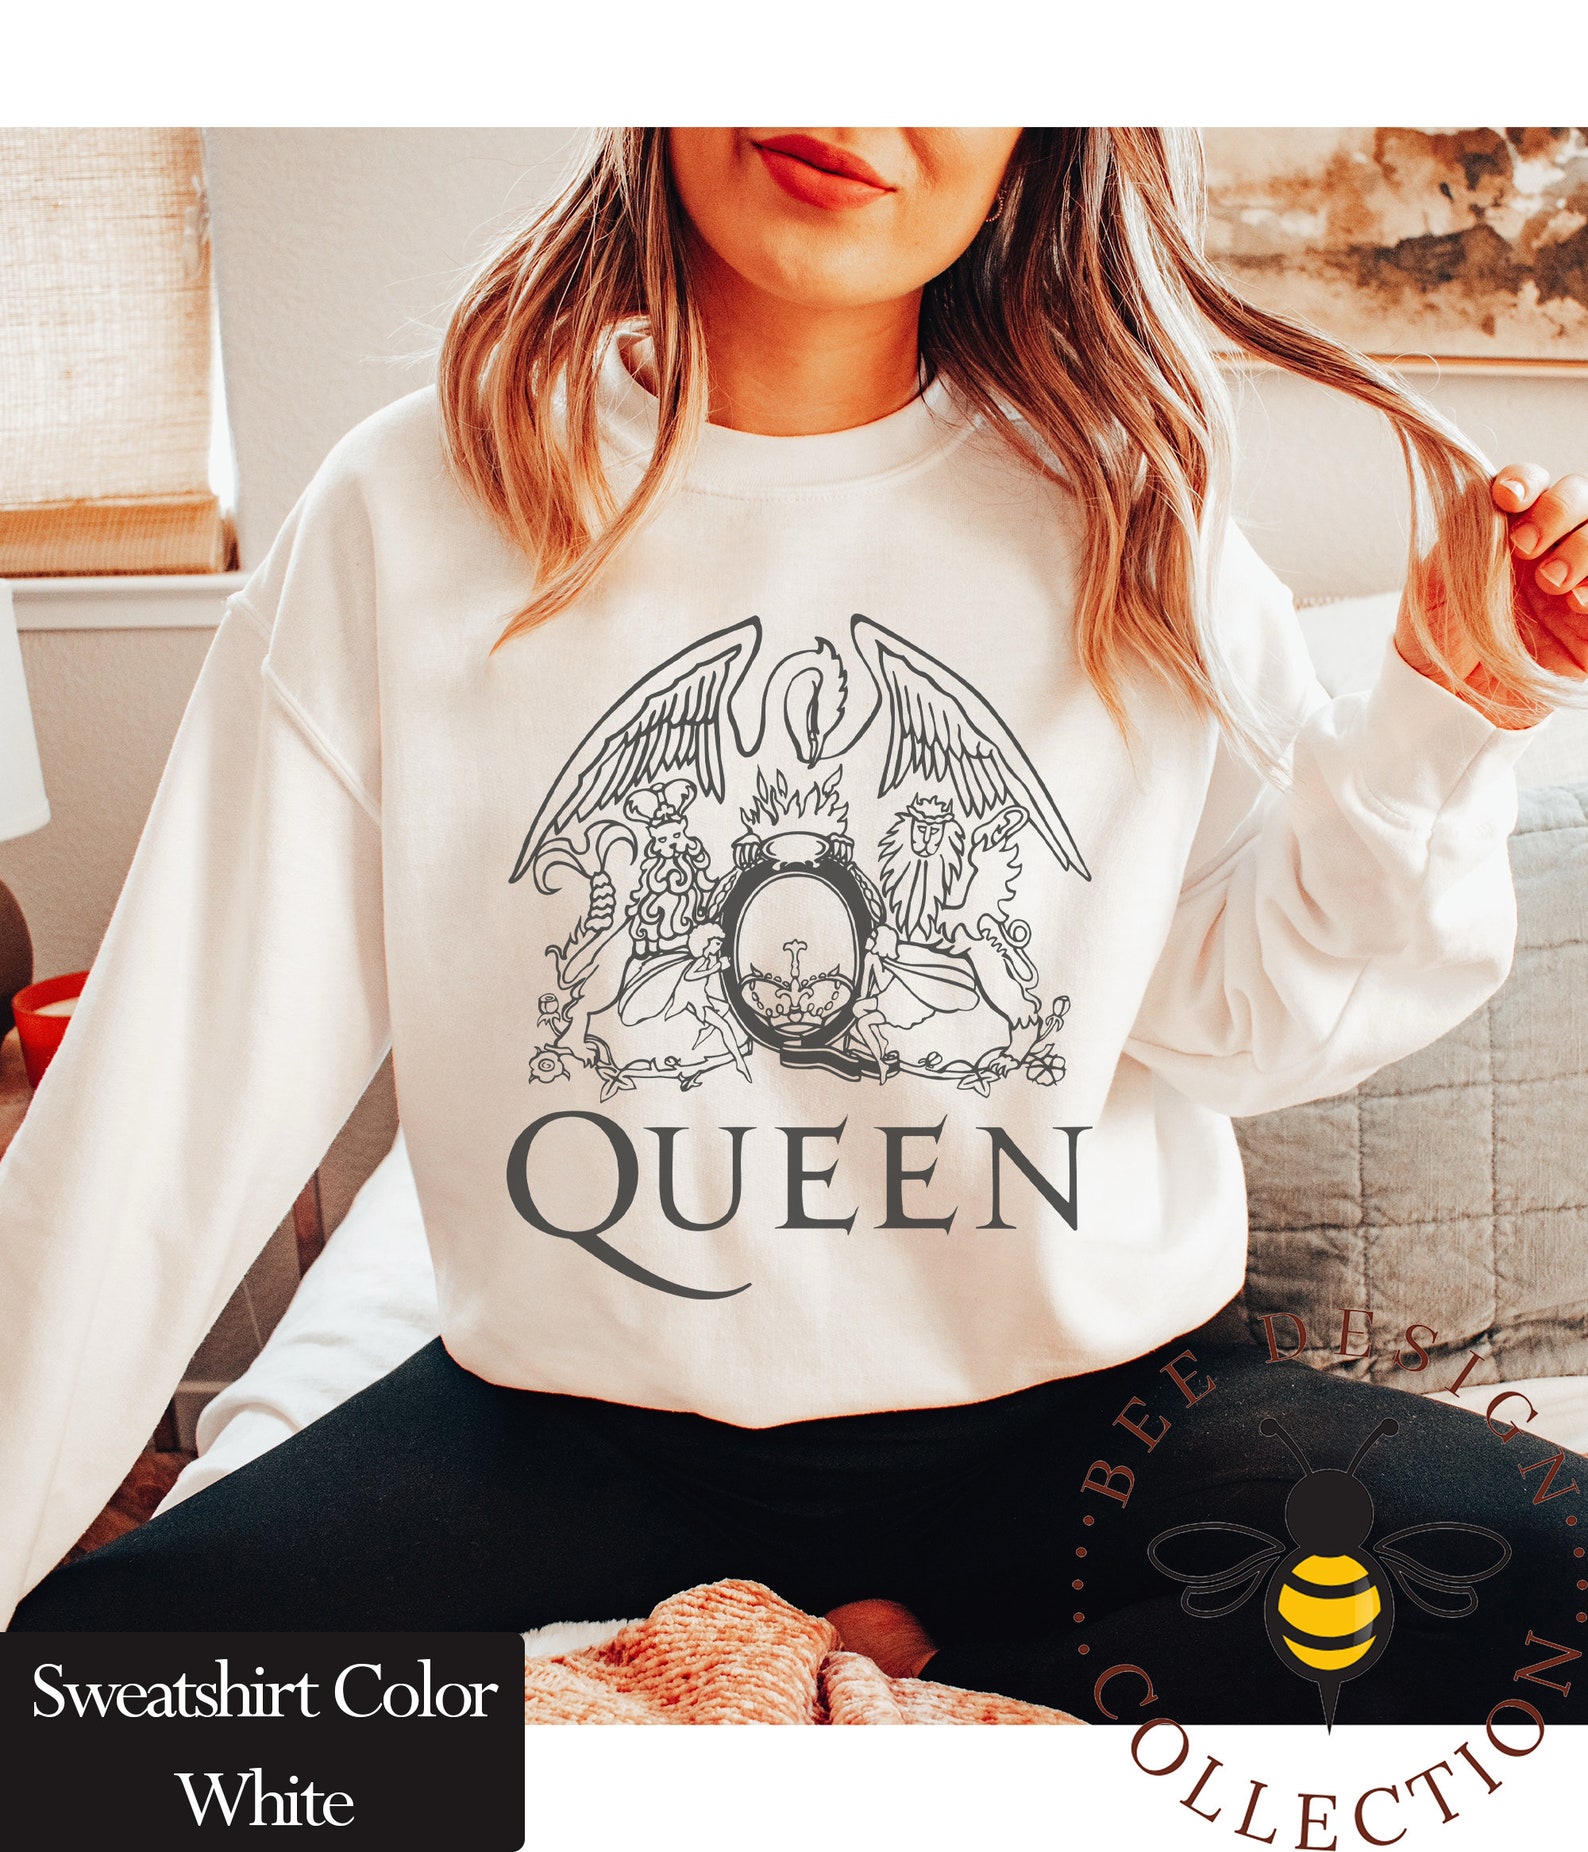 Freddie Mercury Queen Band Sweatshirt Festival Clothing Rock - Etsy